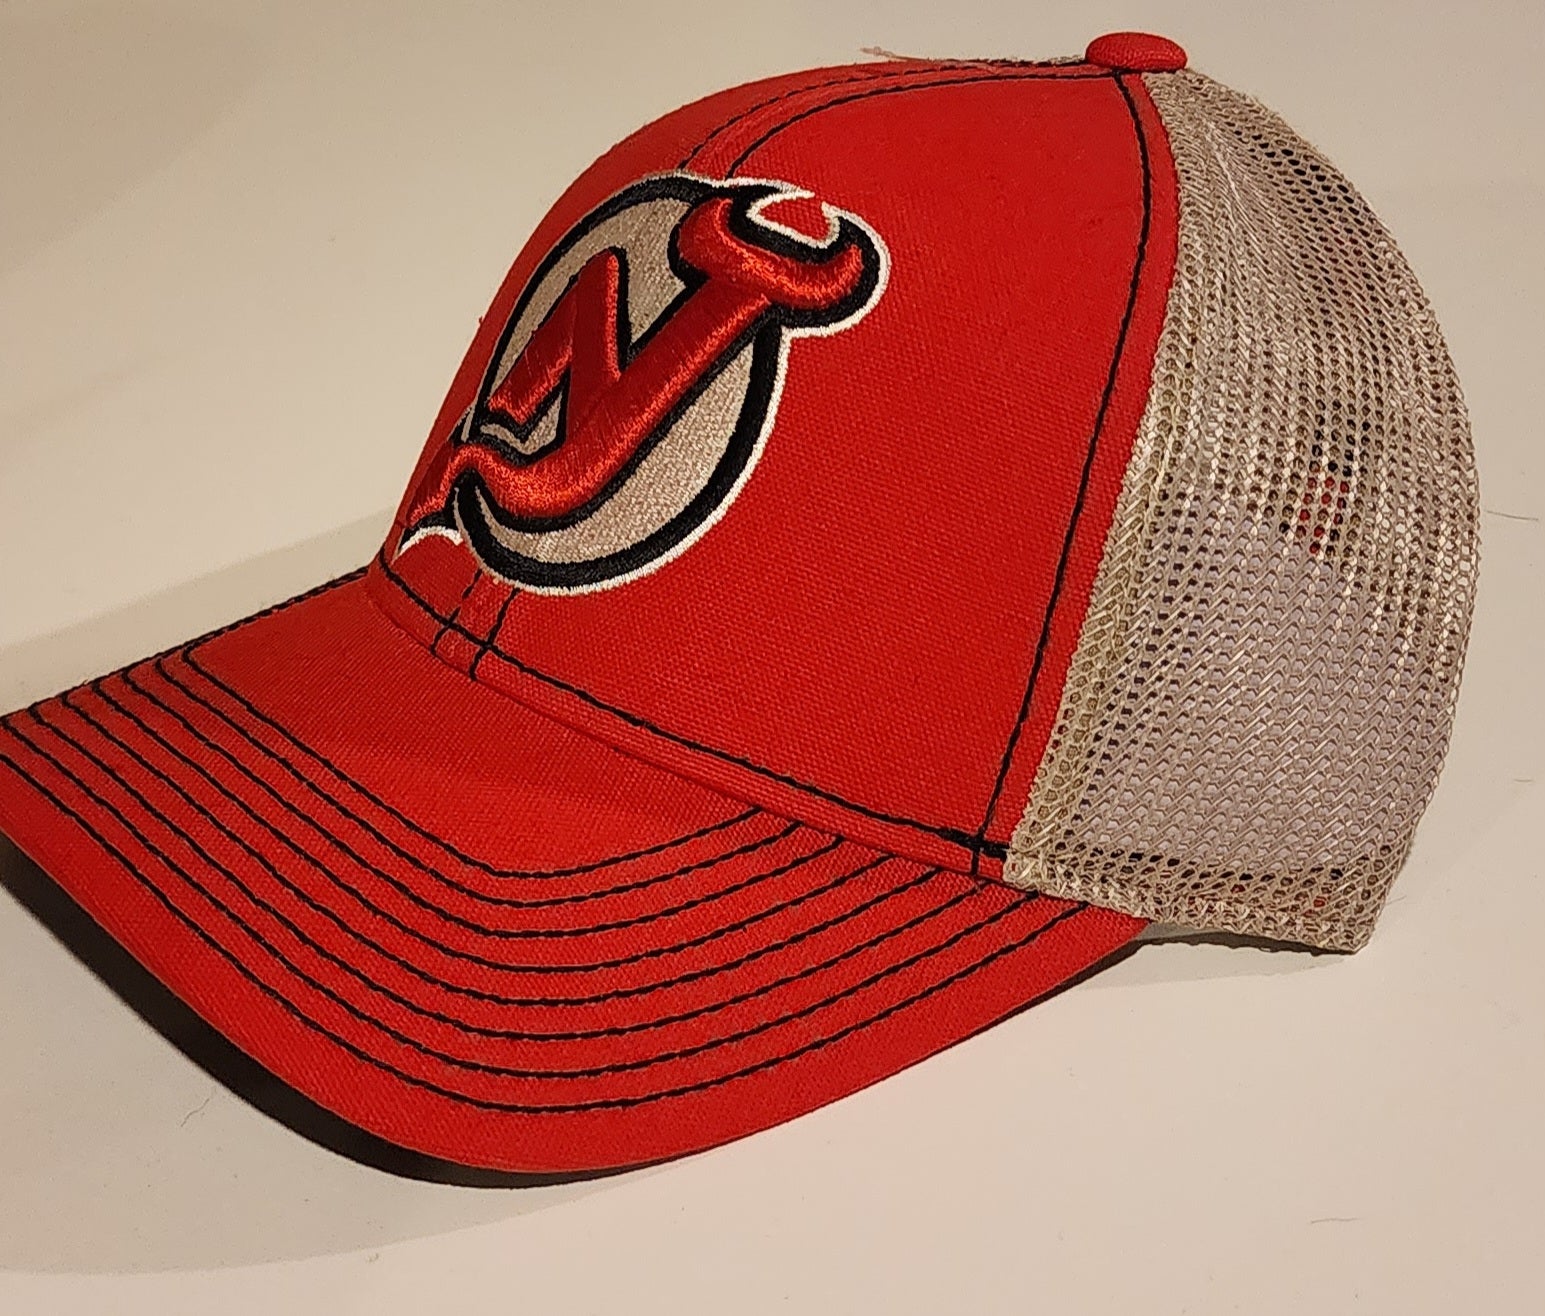 Starter New Jersey Devils NHL Fan Cap, Hats for sale